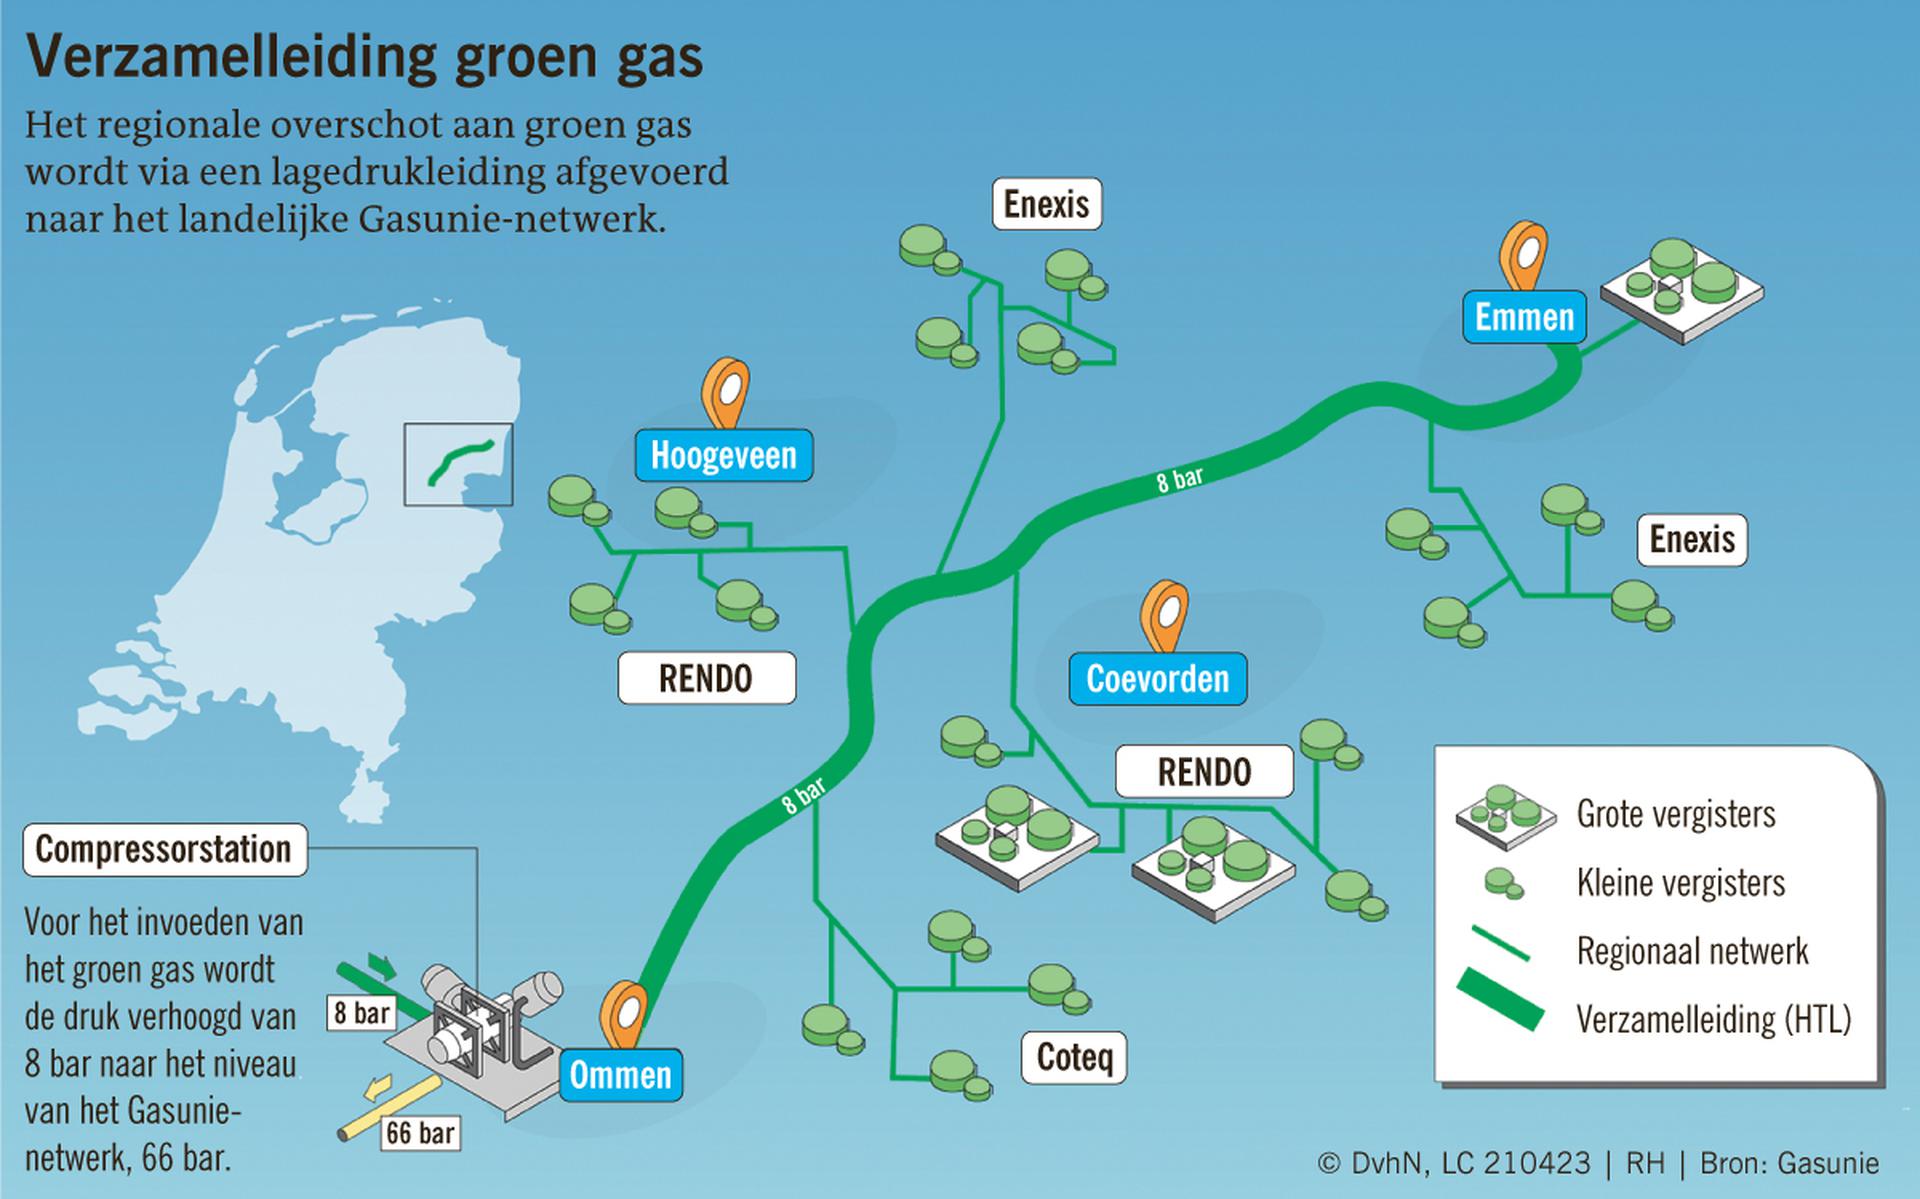 Gasunie gaat een 60 kilometer lange aardgasleiding van Emmen naar Ommen aanpassen voor het transport van groen gas dat door vergisters in de aanliggende regio wordt geproduceerd.